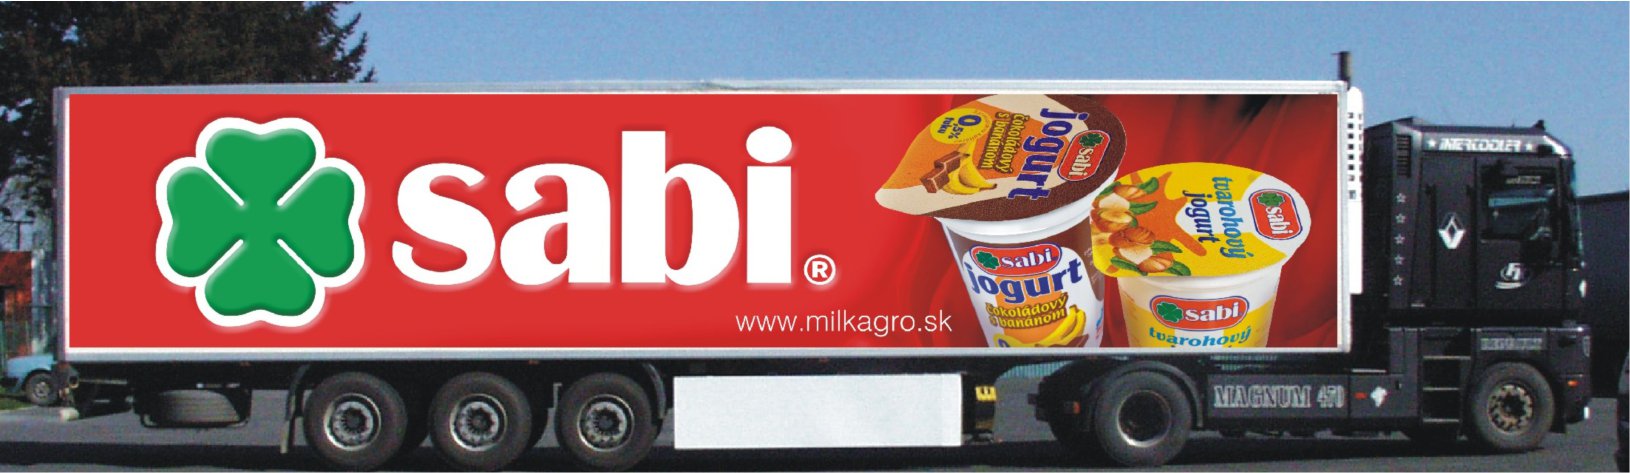 Skriňový chladiarenský kamión firmy Milk-Agro